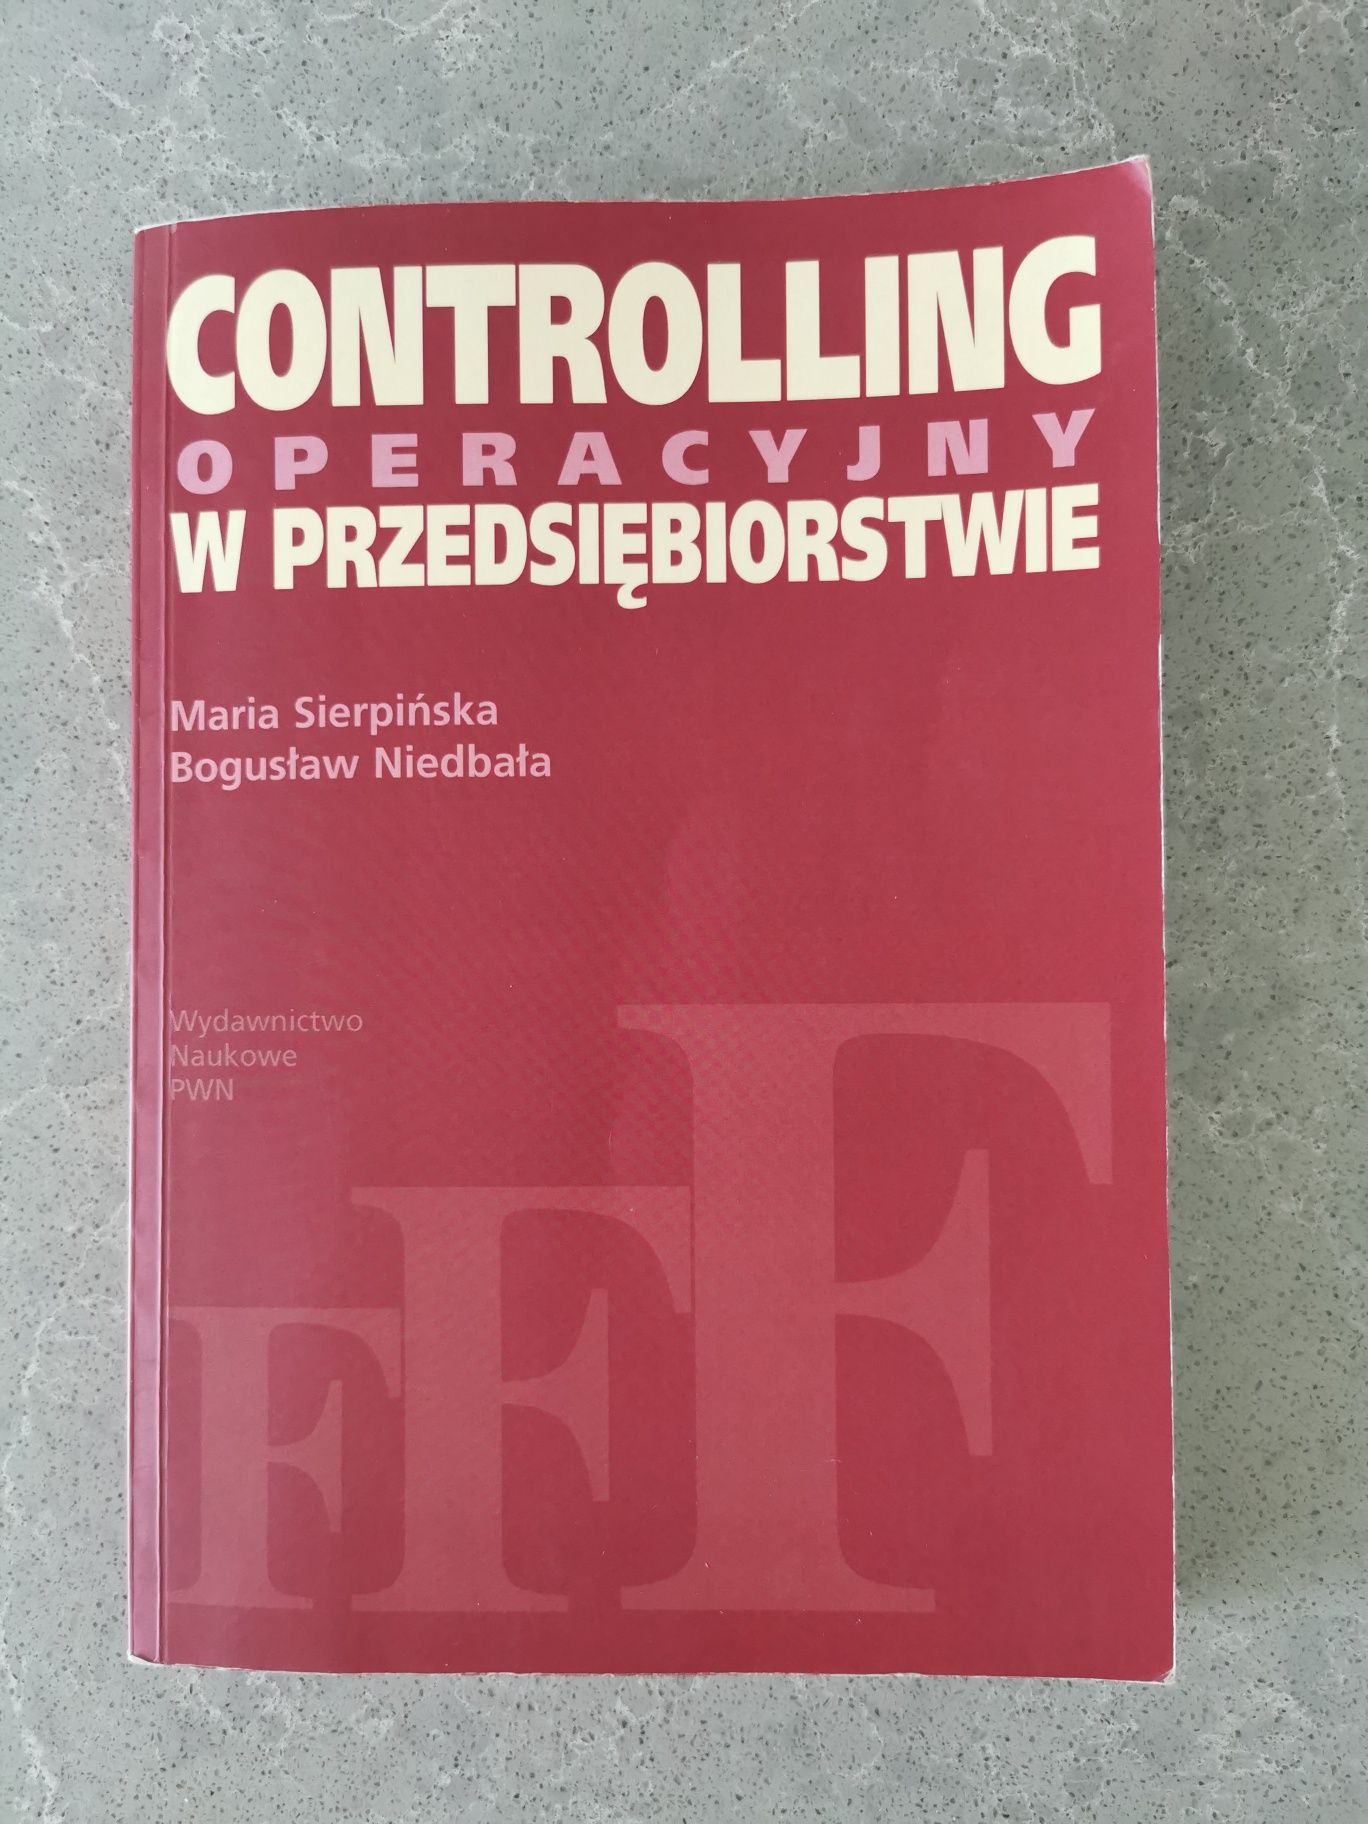 Controlling operacyjny w przedsiębiorstwie - Niedbała, Sierpińska